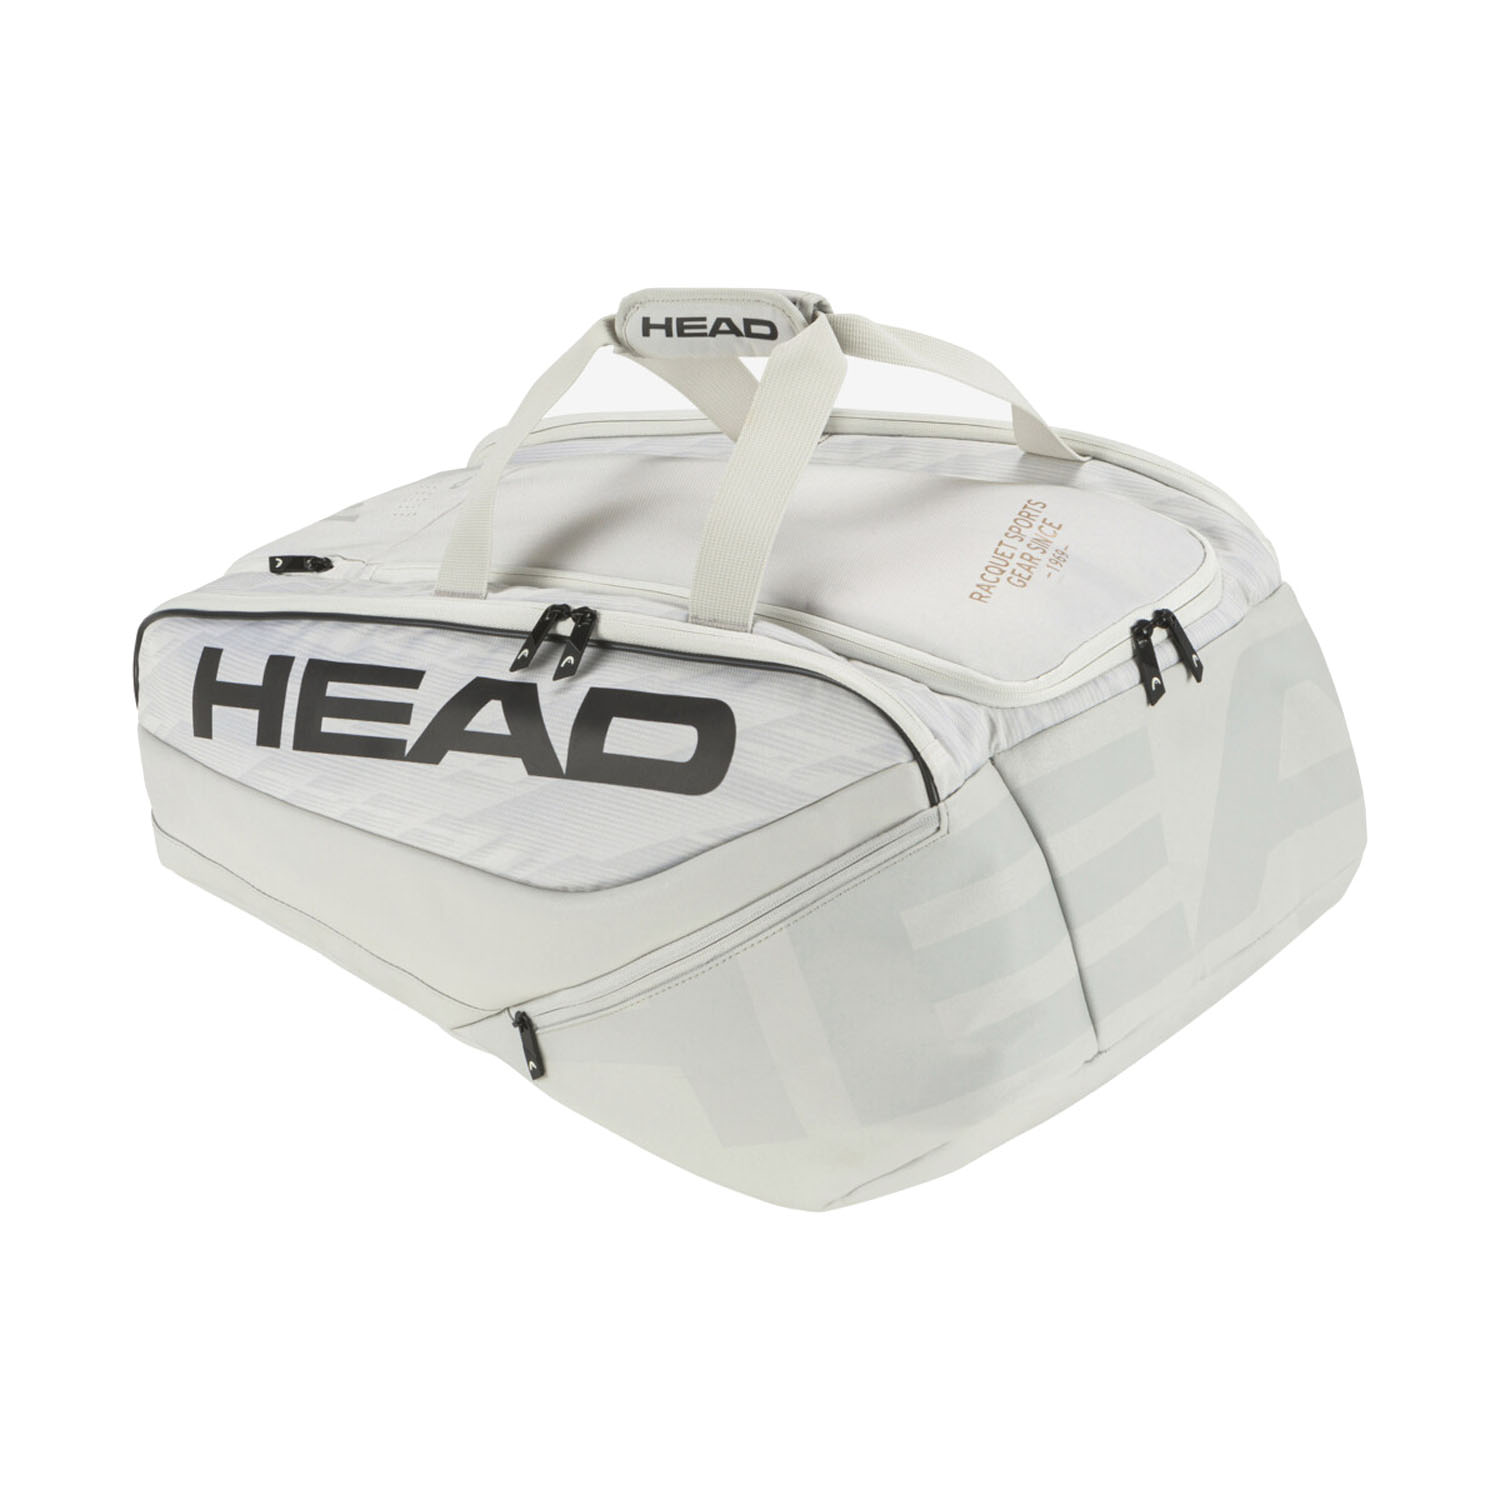 Head Pro X L Bag - Corduroy White/Black